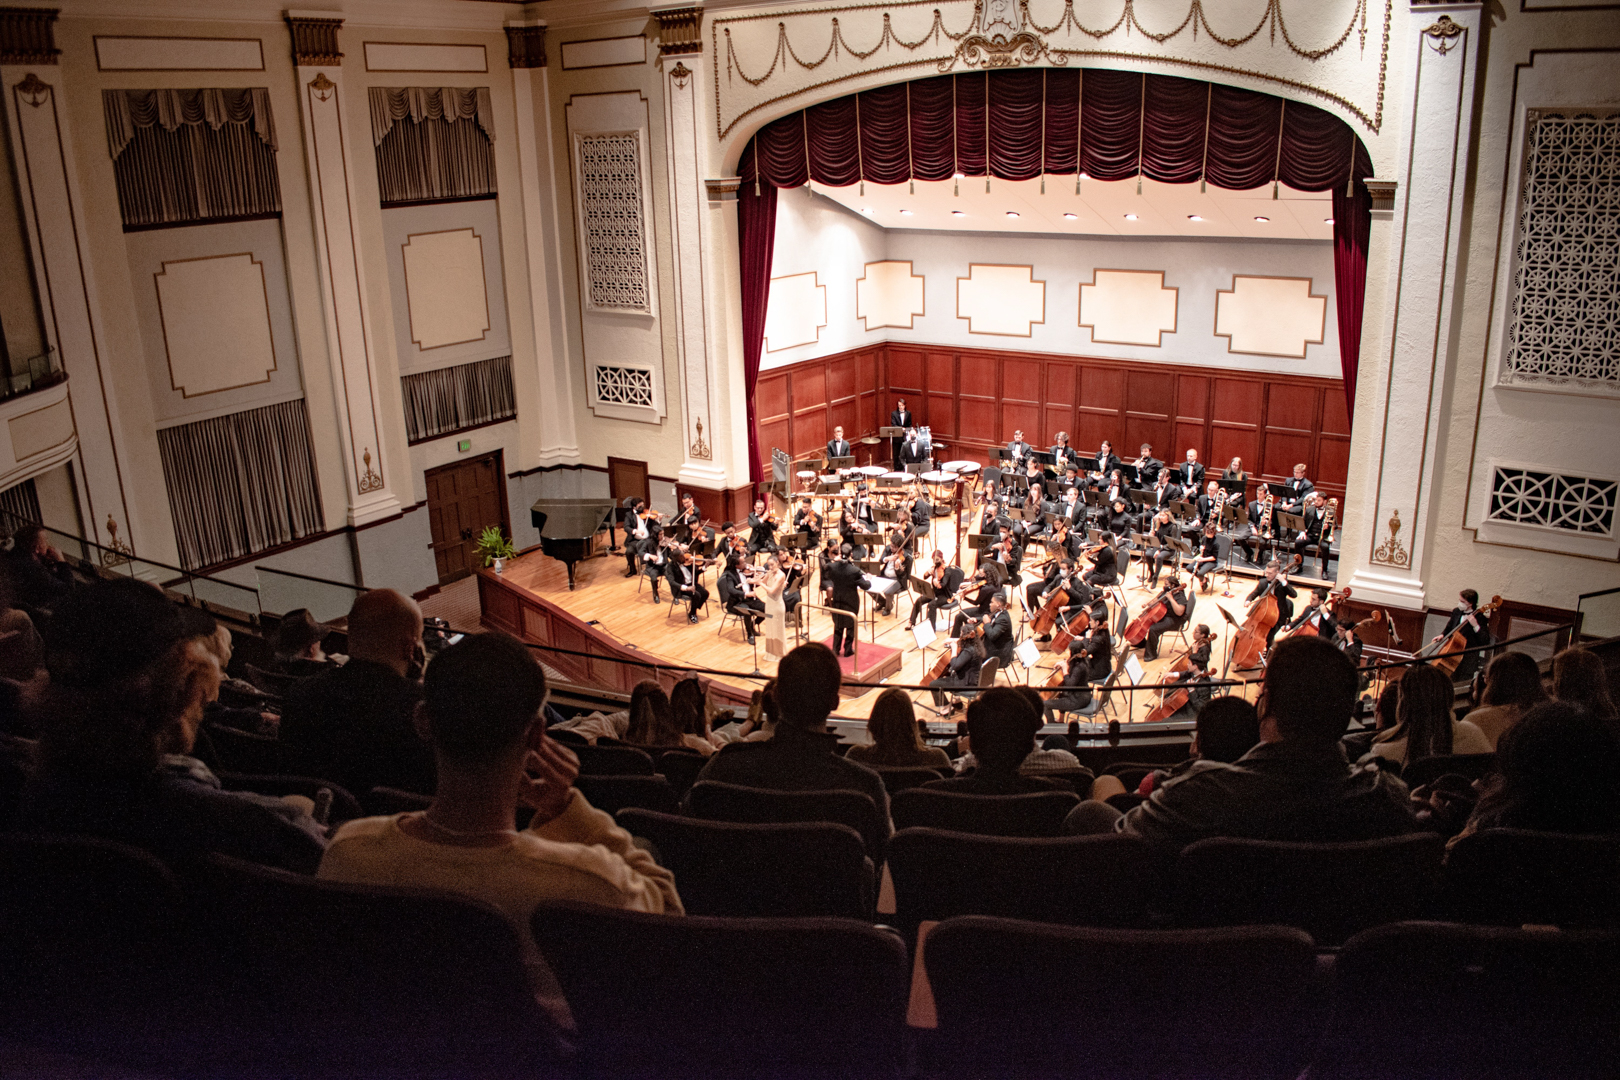 The University of Southern Mississippi (USM) Symphony Orchestra